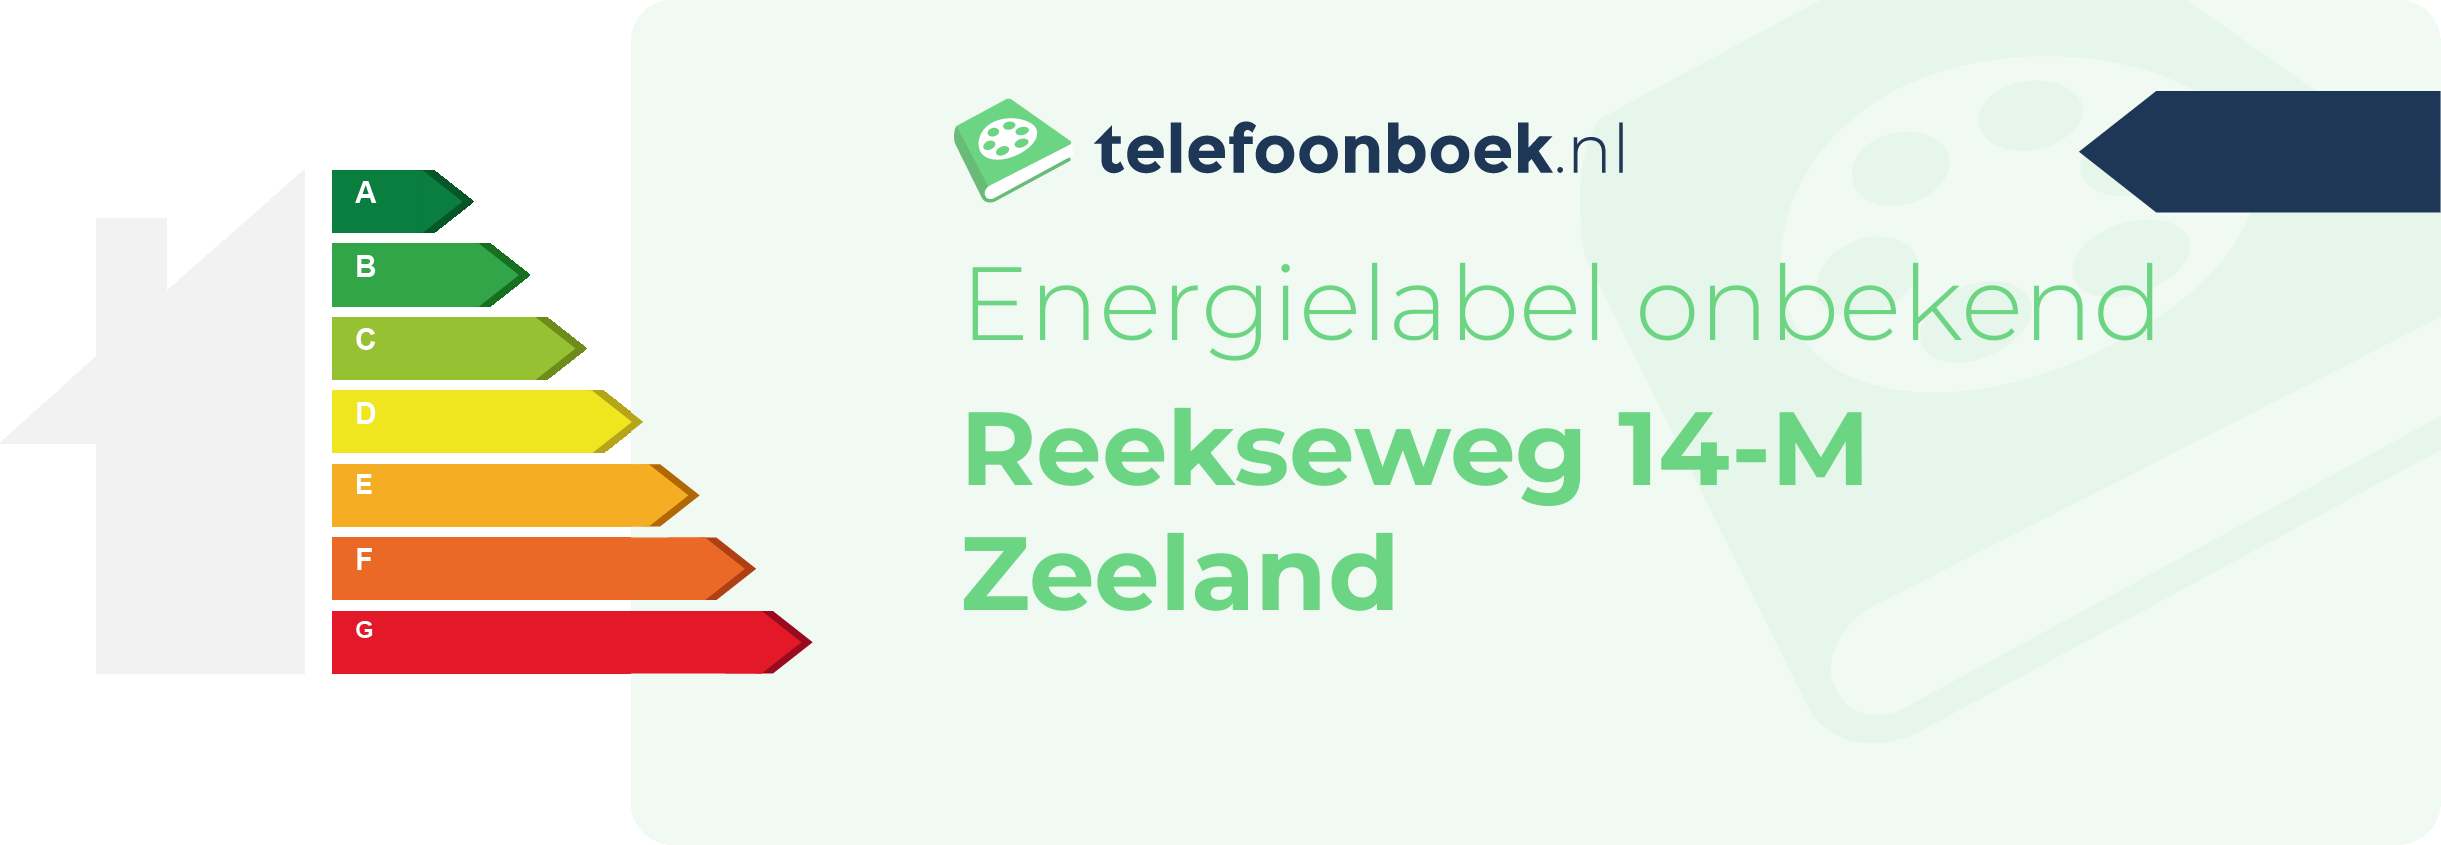 Energielabel Reekseweg 14-M Zeeland